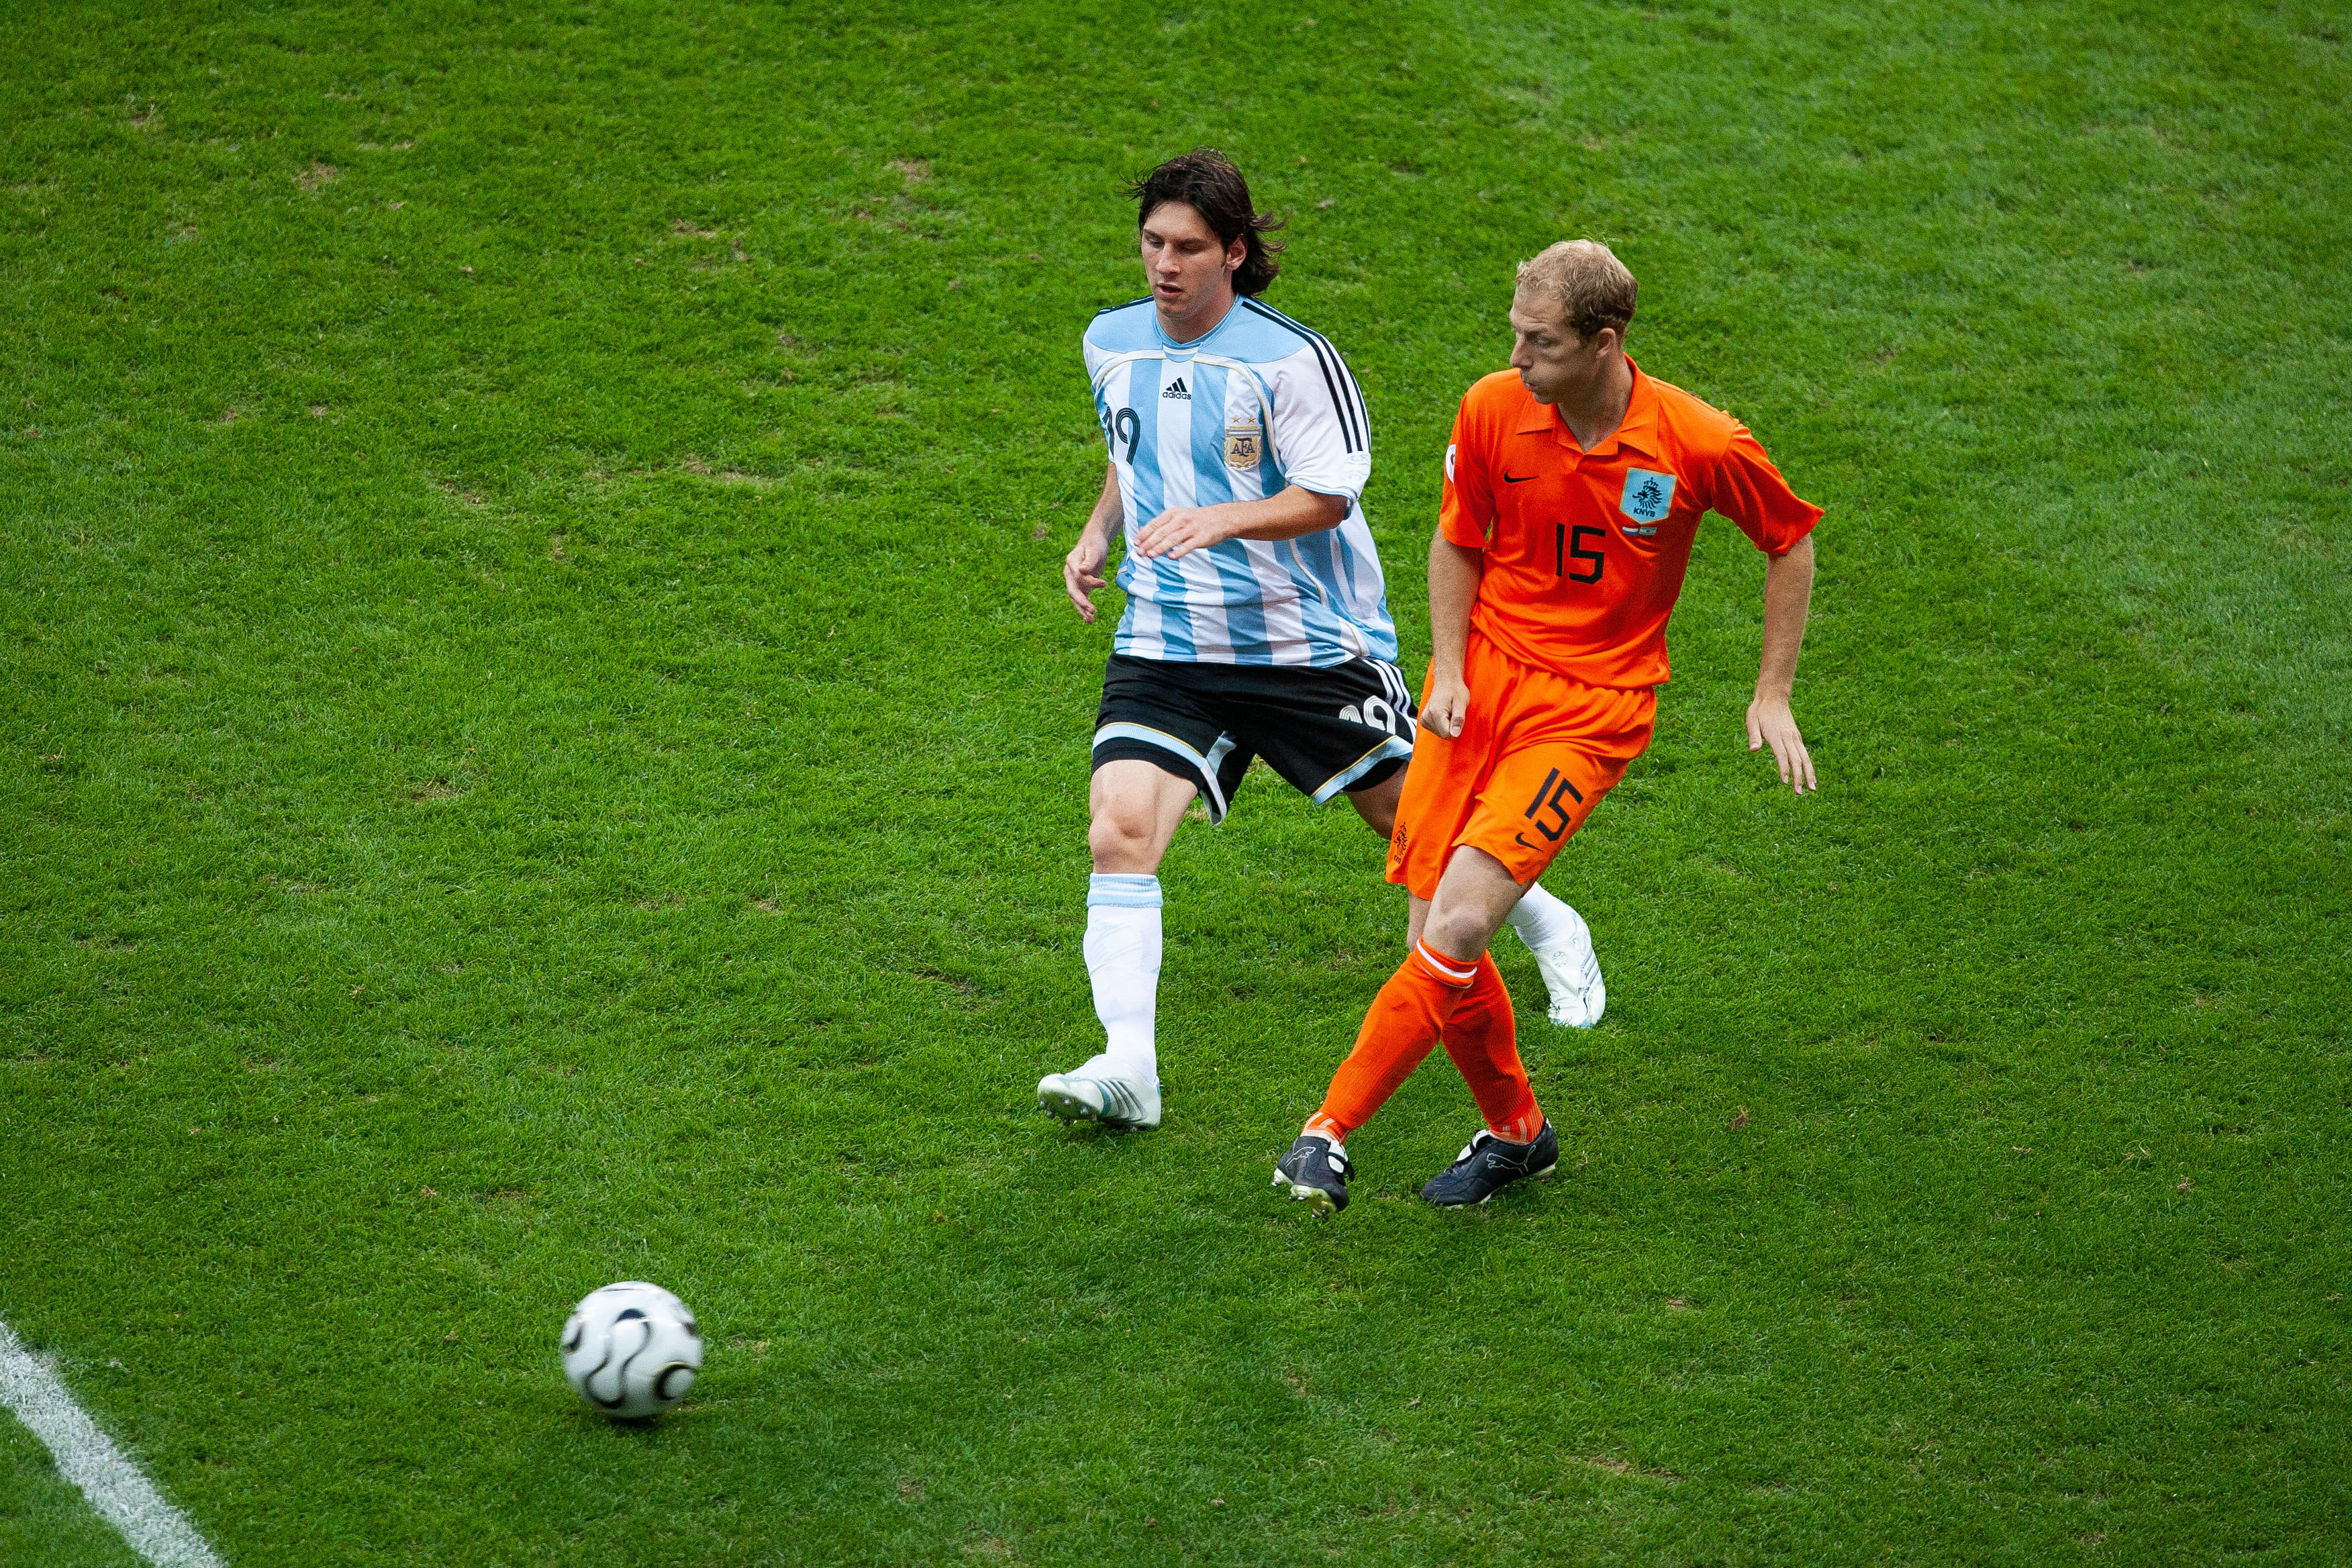 ליאונל מסי ונבחרת ארגנטינה נגד טים דה קלר ונבחרת הולנד, מונדיאל 2006